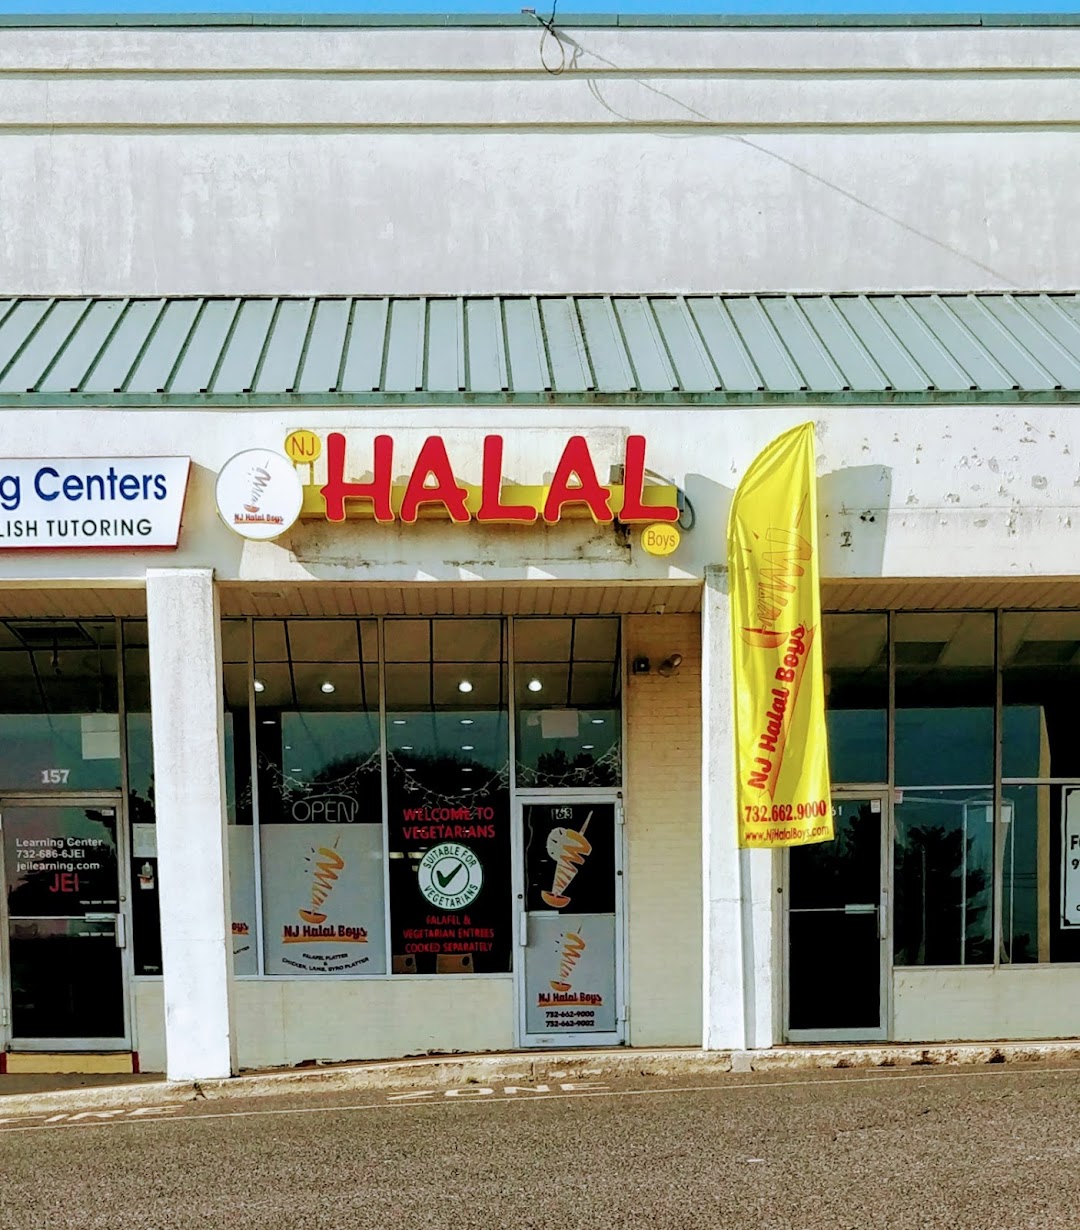 NJ Halal Bowls